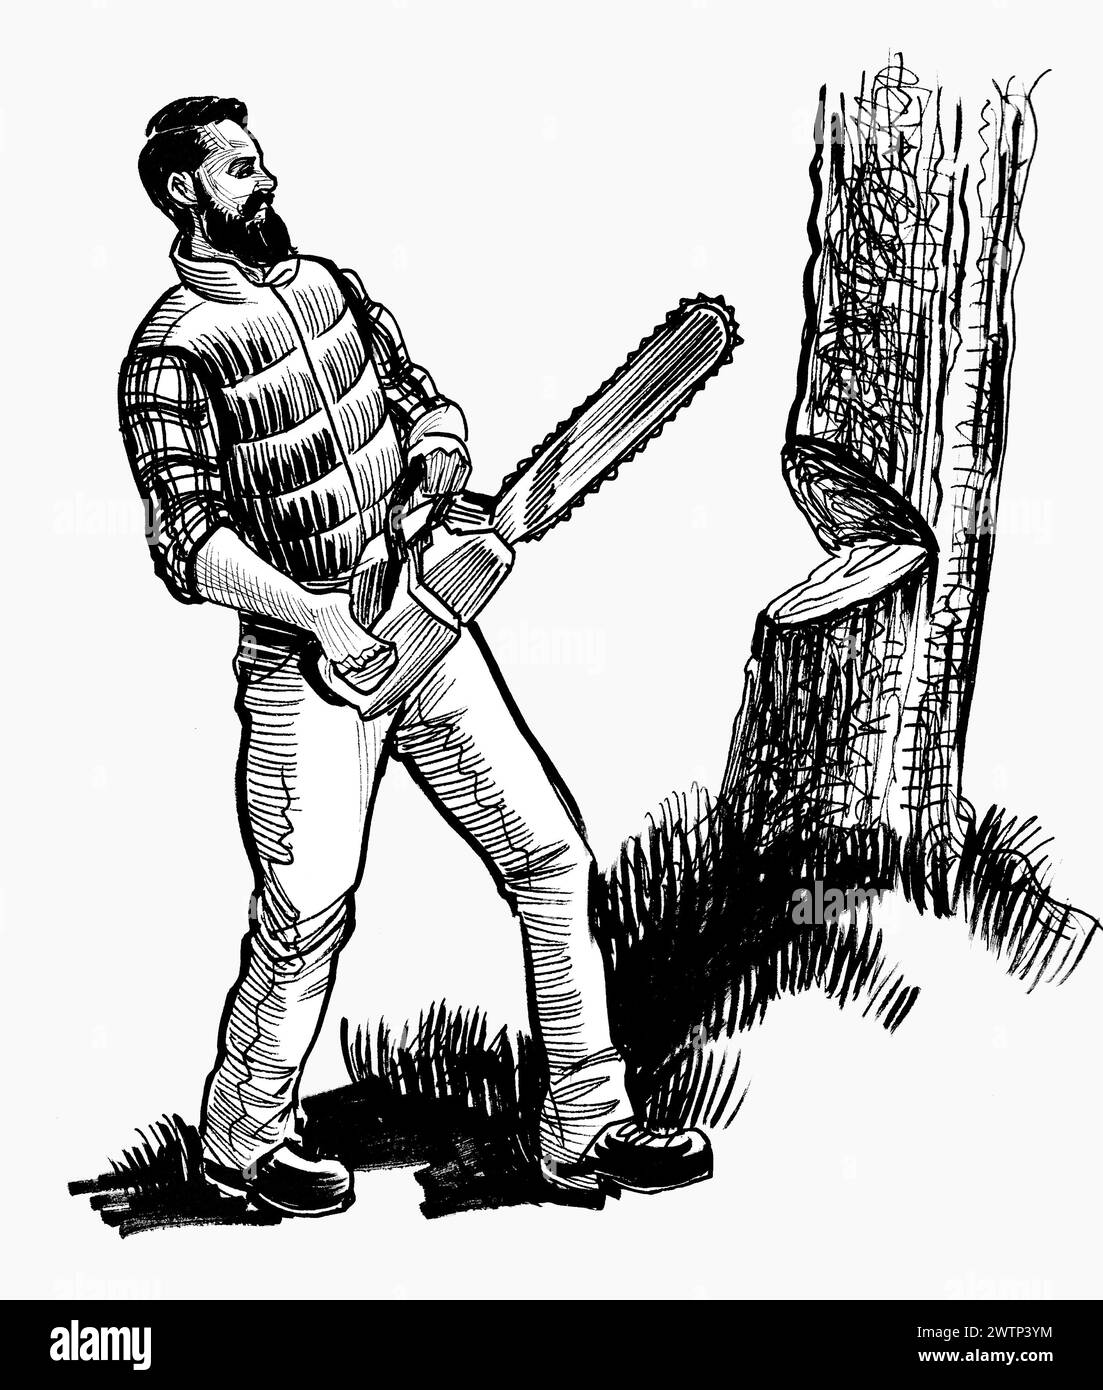 Holzfäller schneiden Baum mit Kettensäge. Handgezeichnete schwarz-weiße Illustration im Retro-Stil Stockfoto